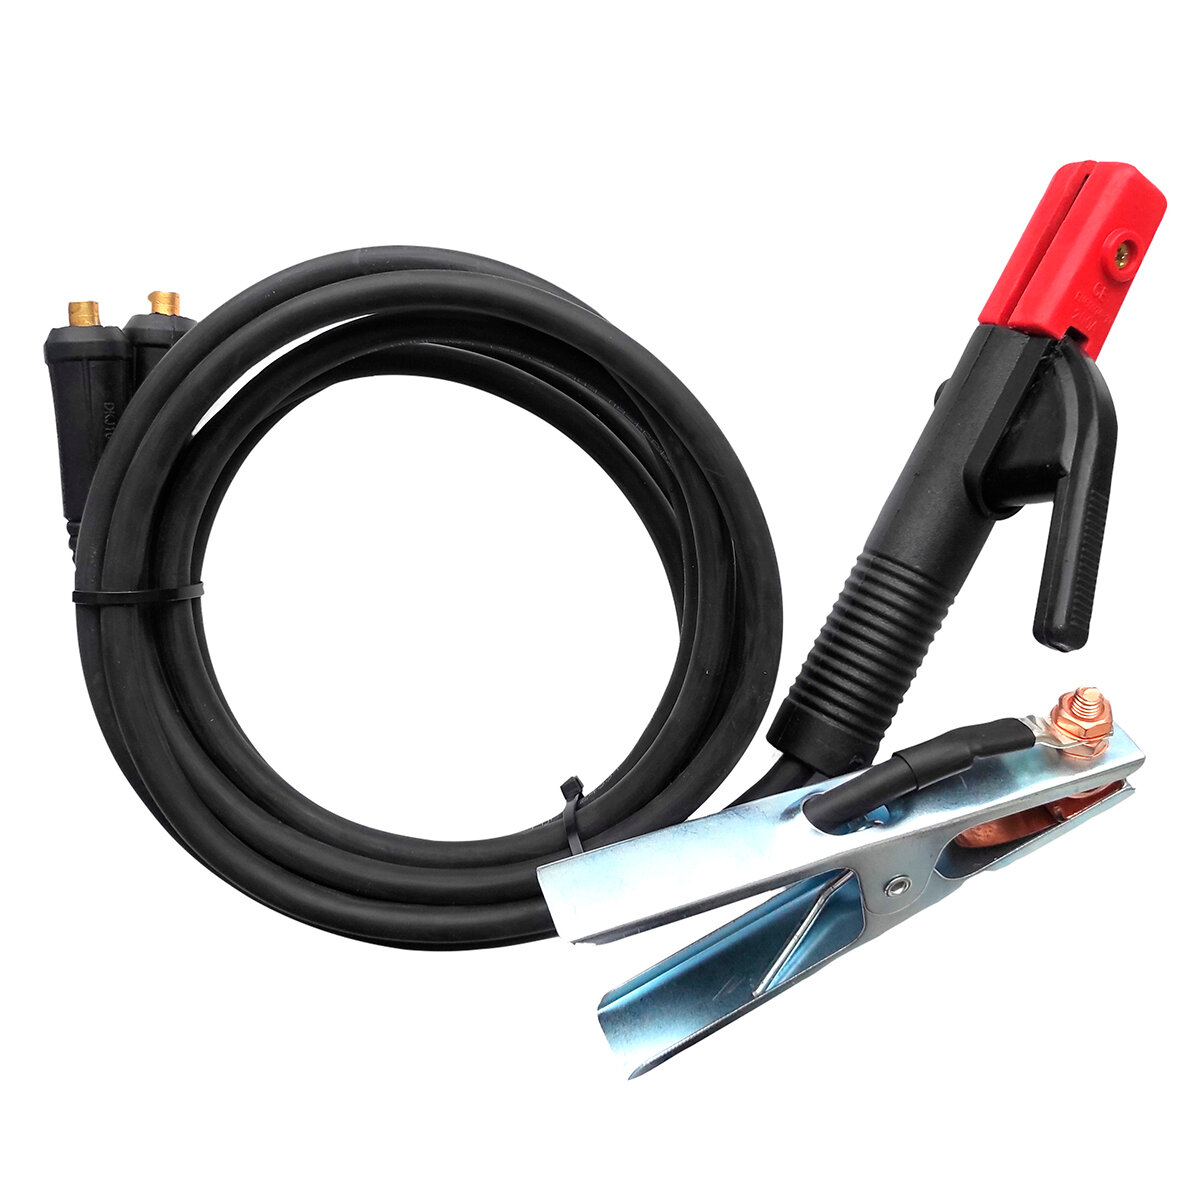 Комплект кабелей d16 mm 2м Профессионал 013 комплект сварочных кабелей vebex 10 метров держатели 300а вилки 10 25 скваркаб10м